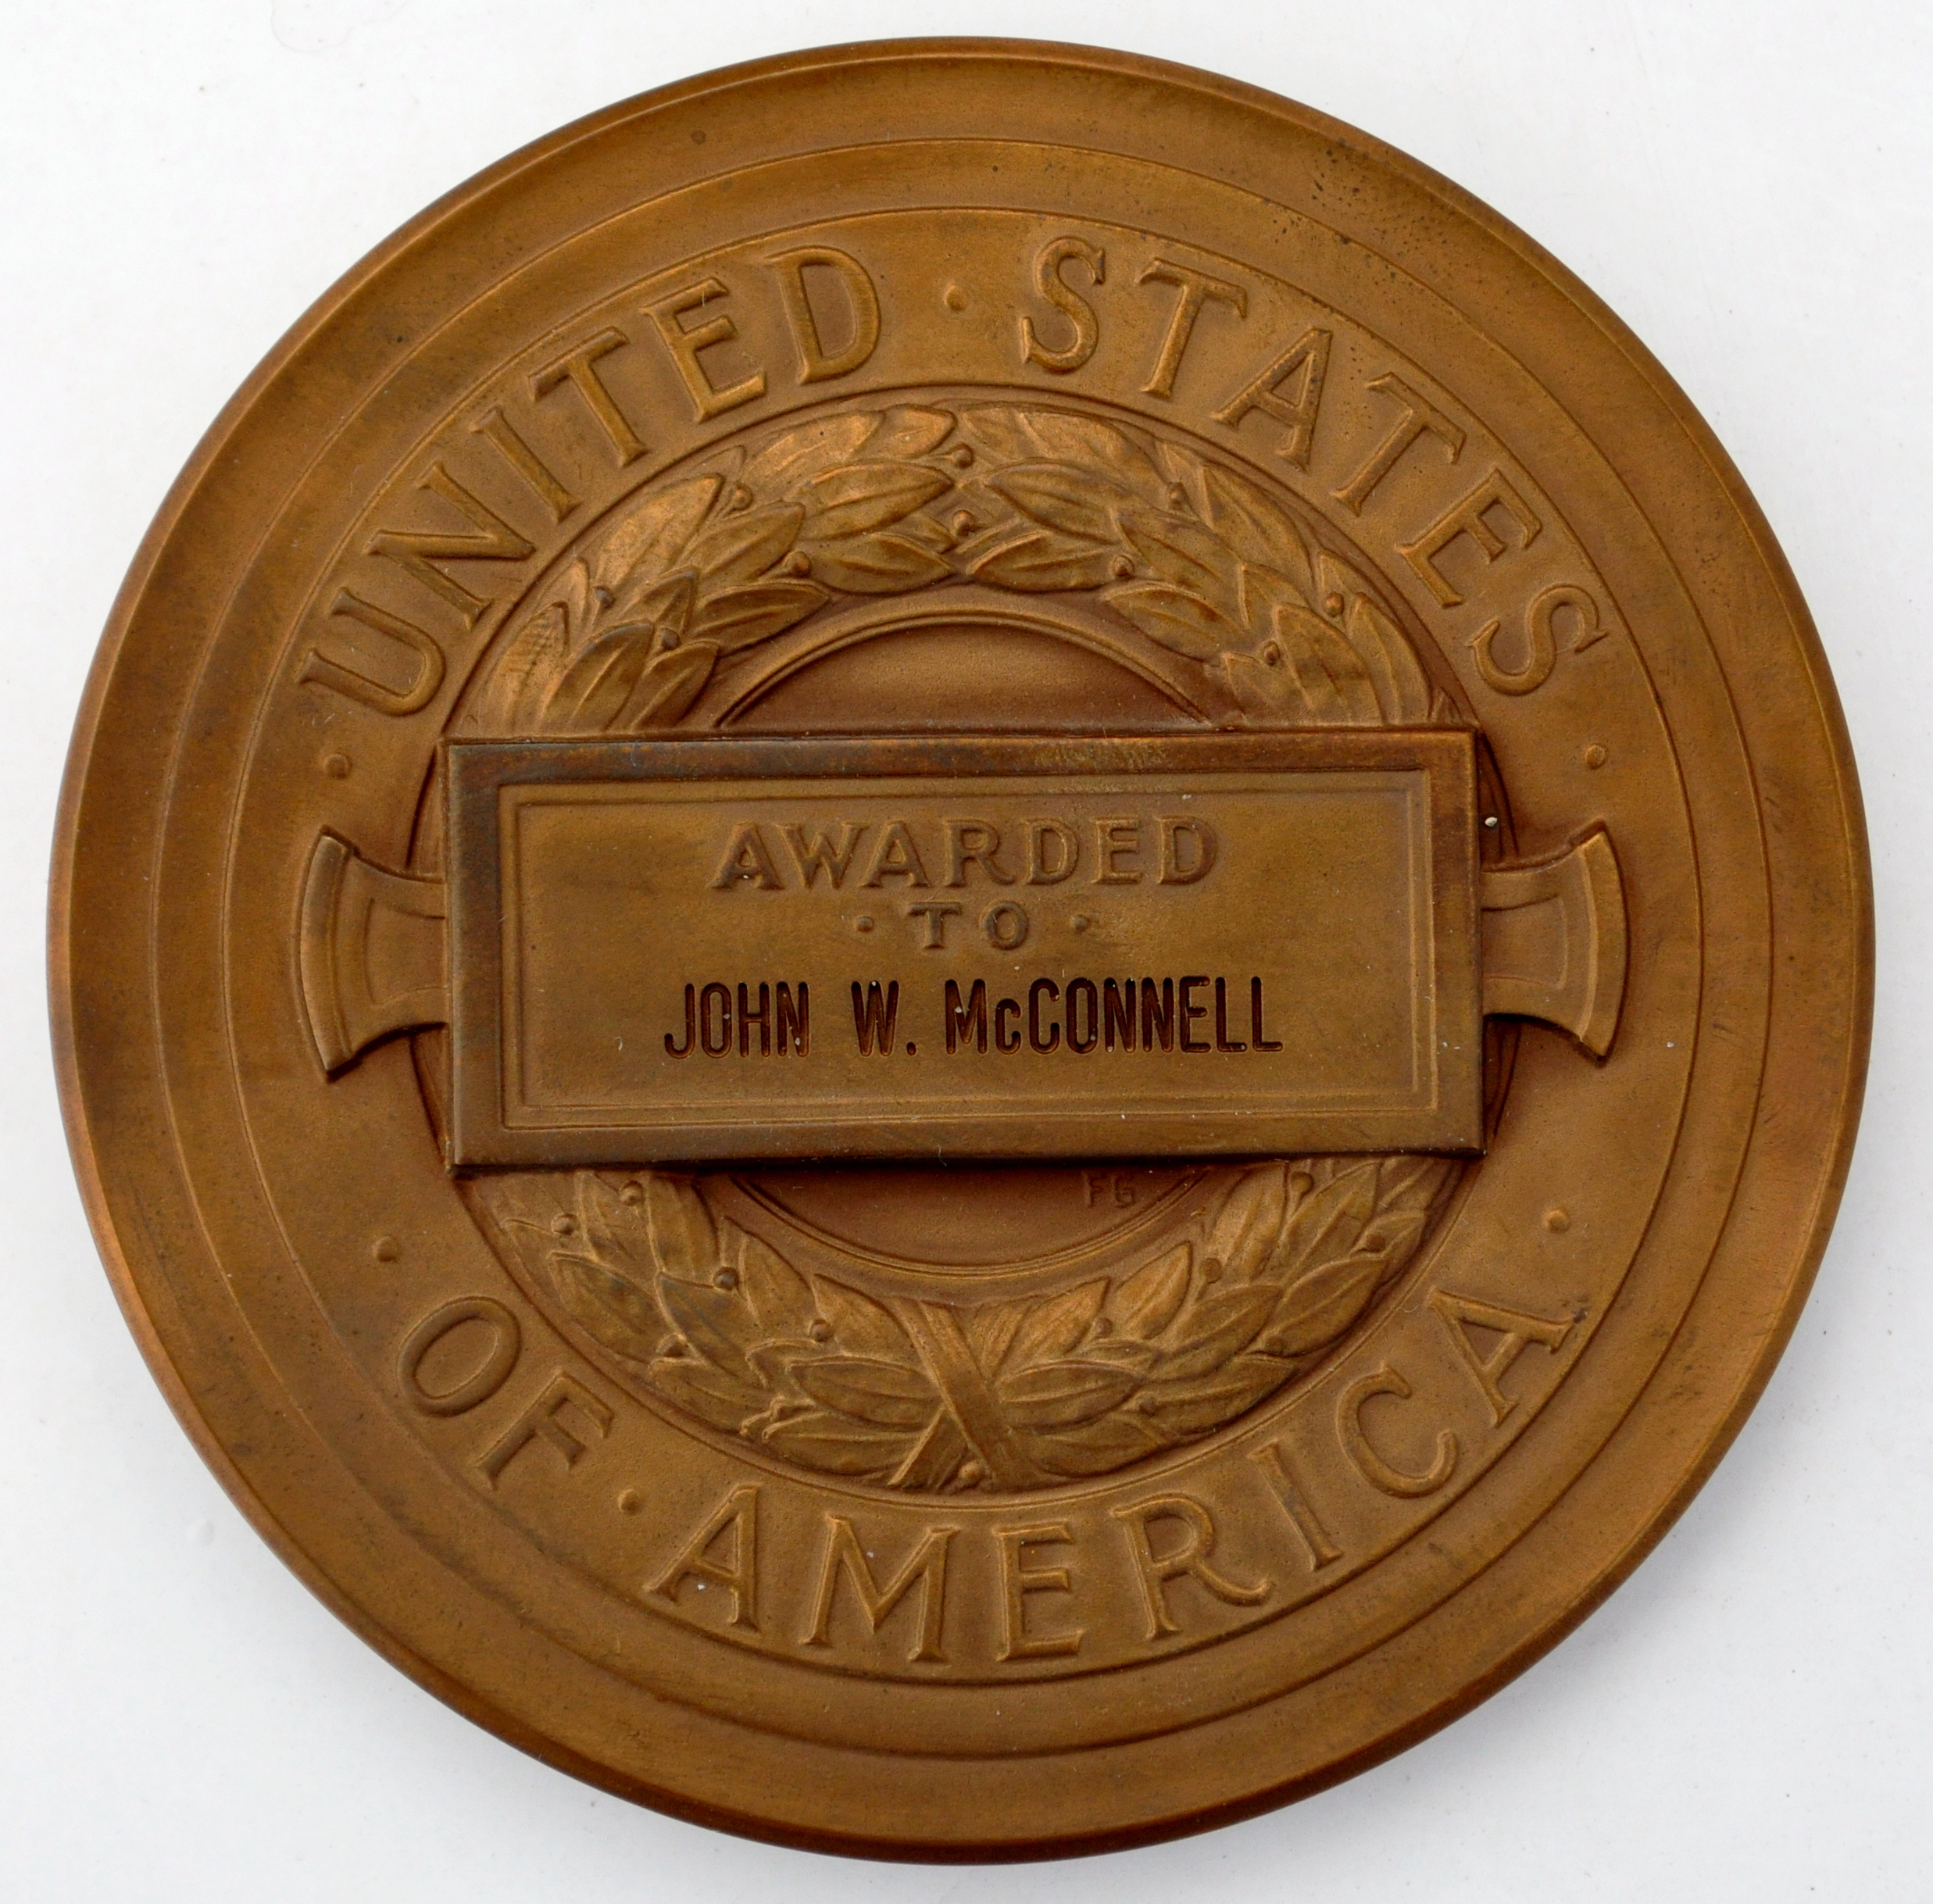 John W. McConnell’s CIA Intelligence Merit Medal (back)